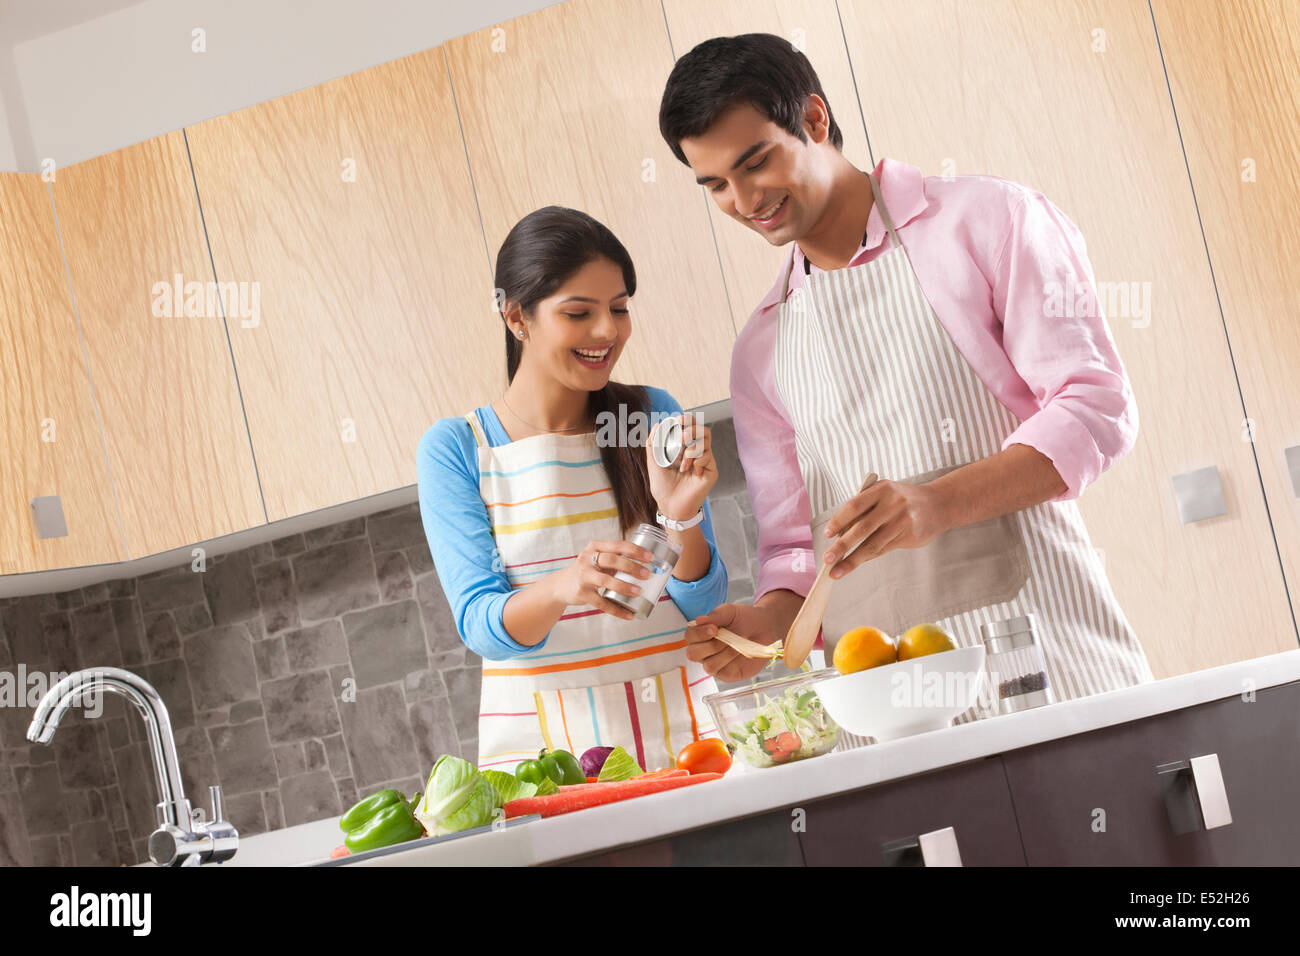 Smiling young couple en train de préparer une salade fraîche dans la cuisine Banque D'Images